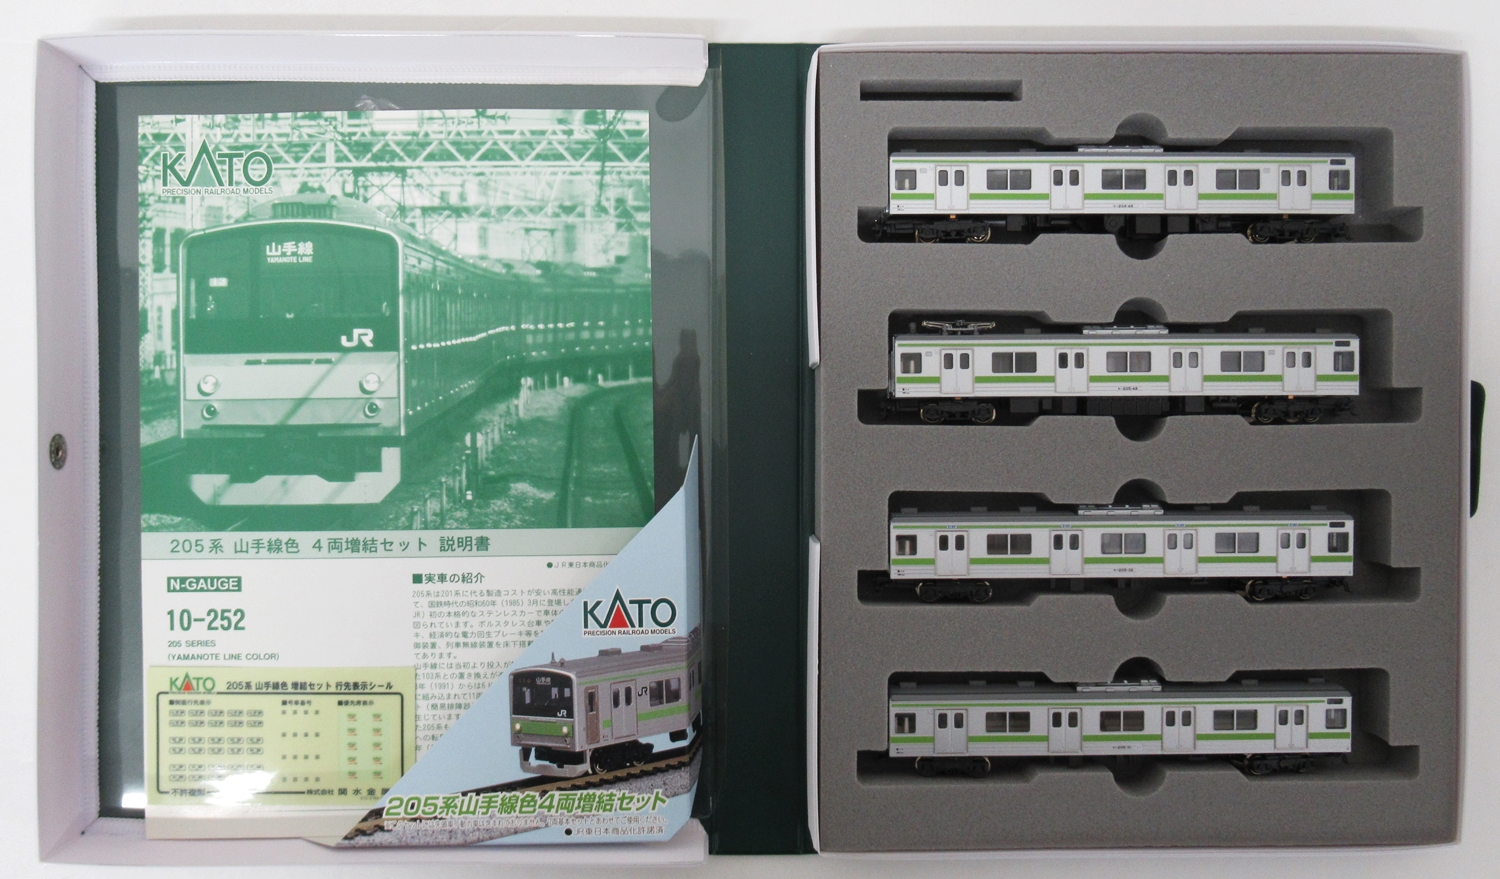 【低価超激安】KATO 10-251 10-252 205系 山手線色 7両基本セット&4両増結セット 計11両 通勤形電車